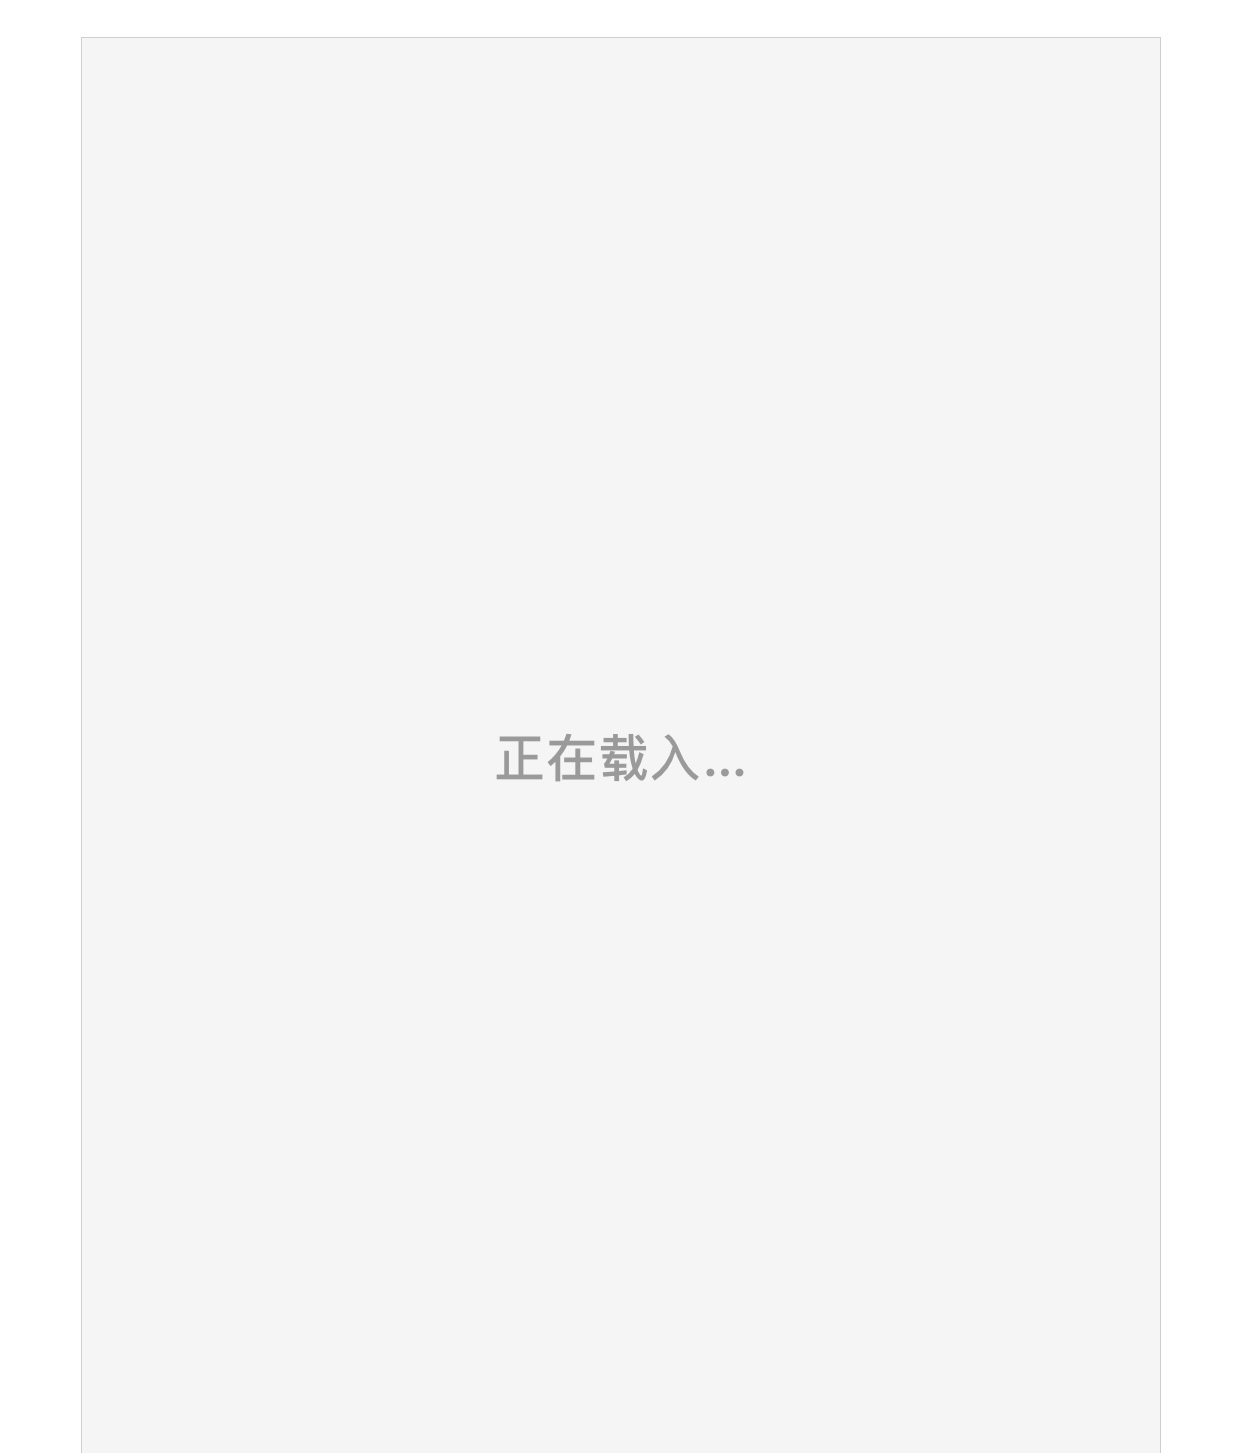 《长安三万里》曝“望长安”版预告海报 7月8日感受“唐风浩荡”_凤凰网